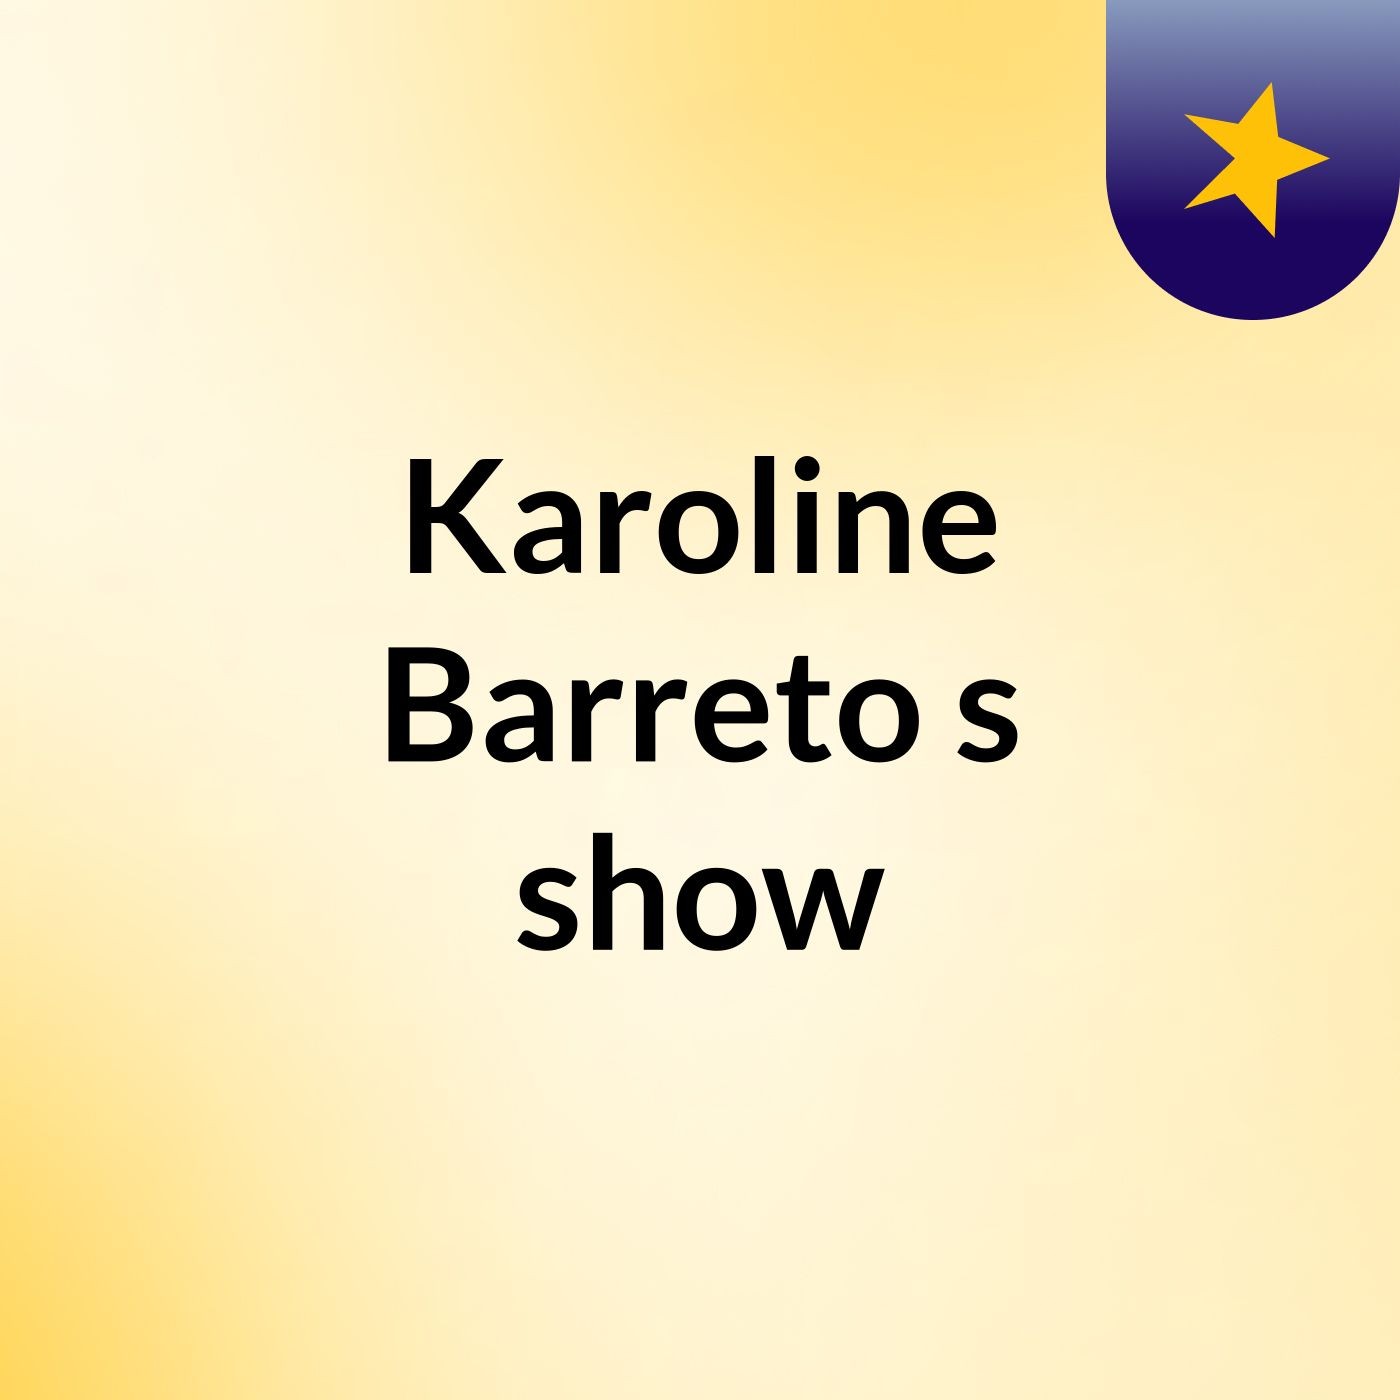 Karoline Barreto's show